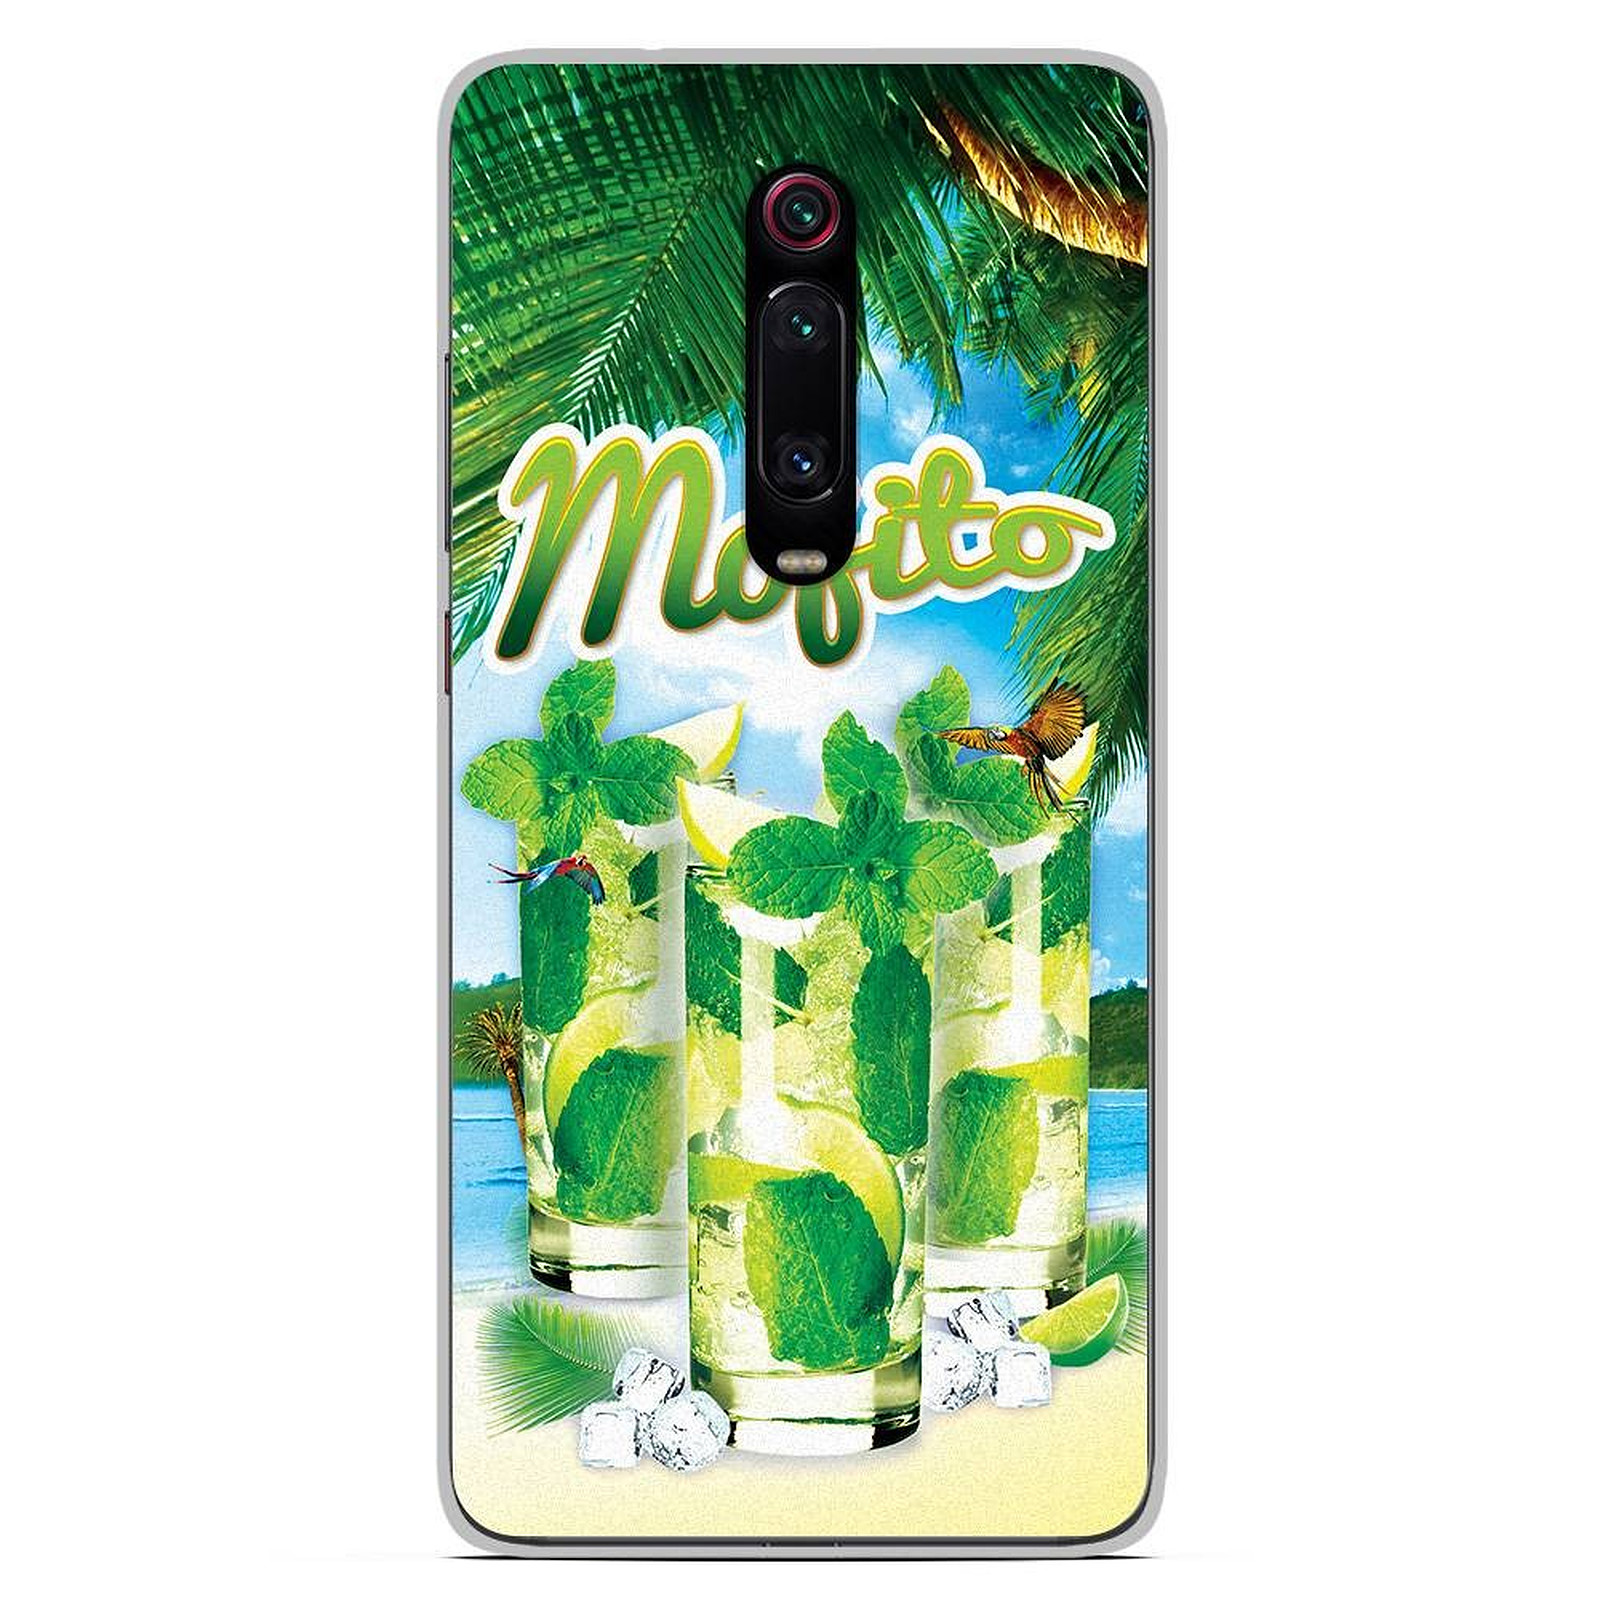 1001 Coques Coque silicone gel Xiaomi Mi 9T motif Mojito Plage - Coque telephone 1001Coques